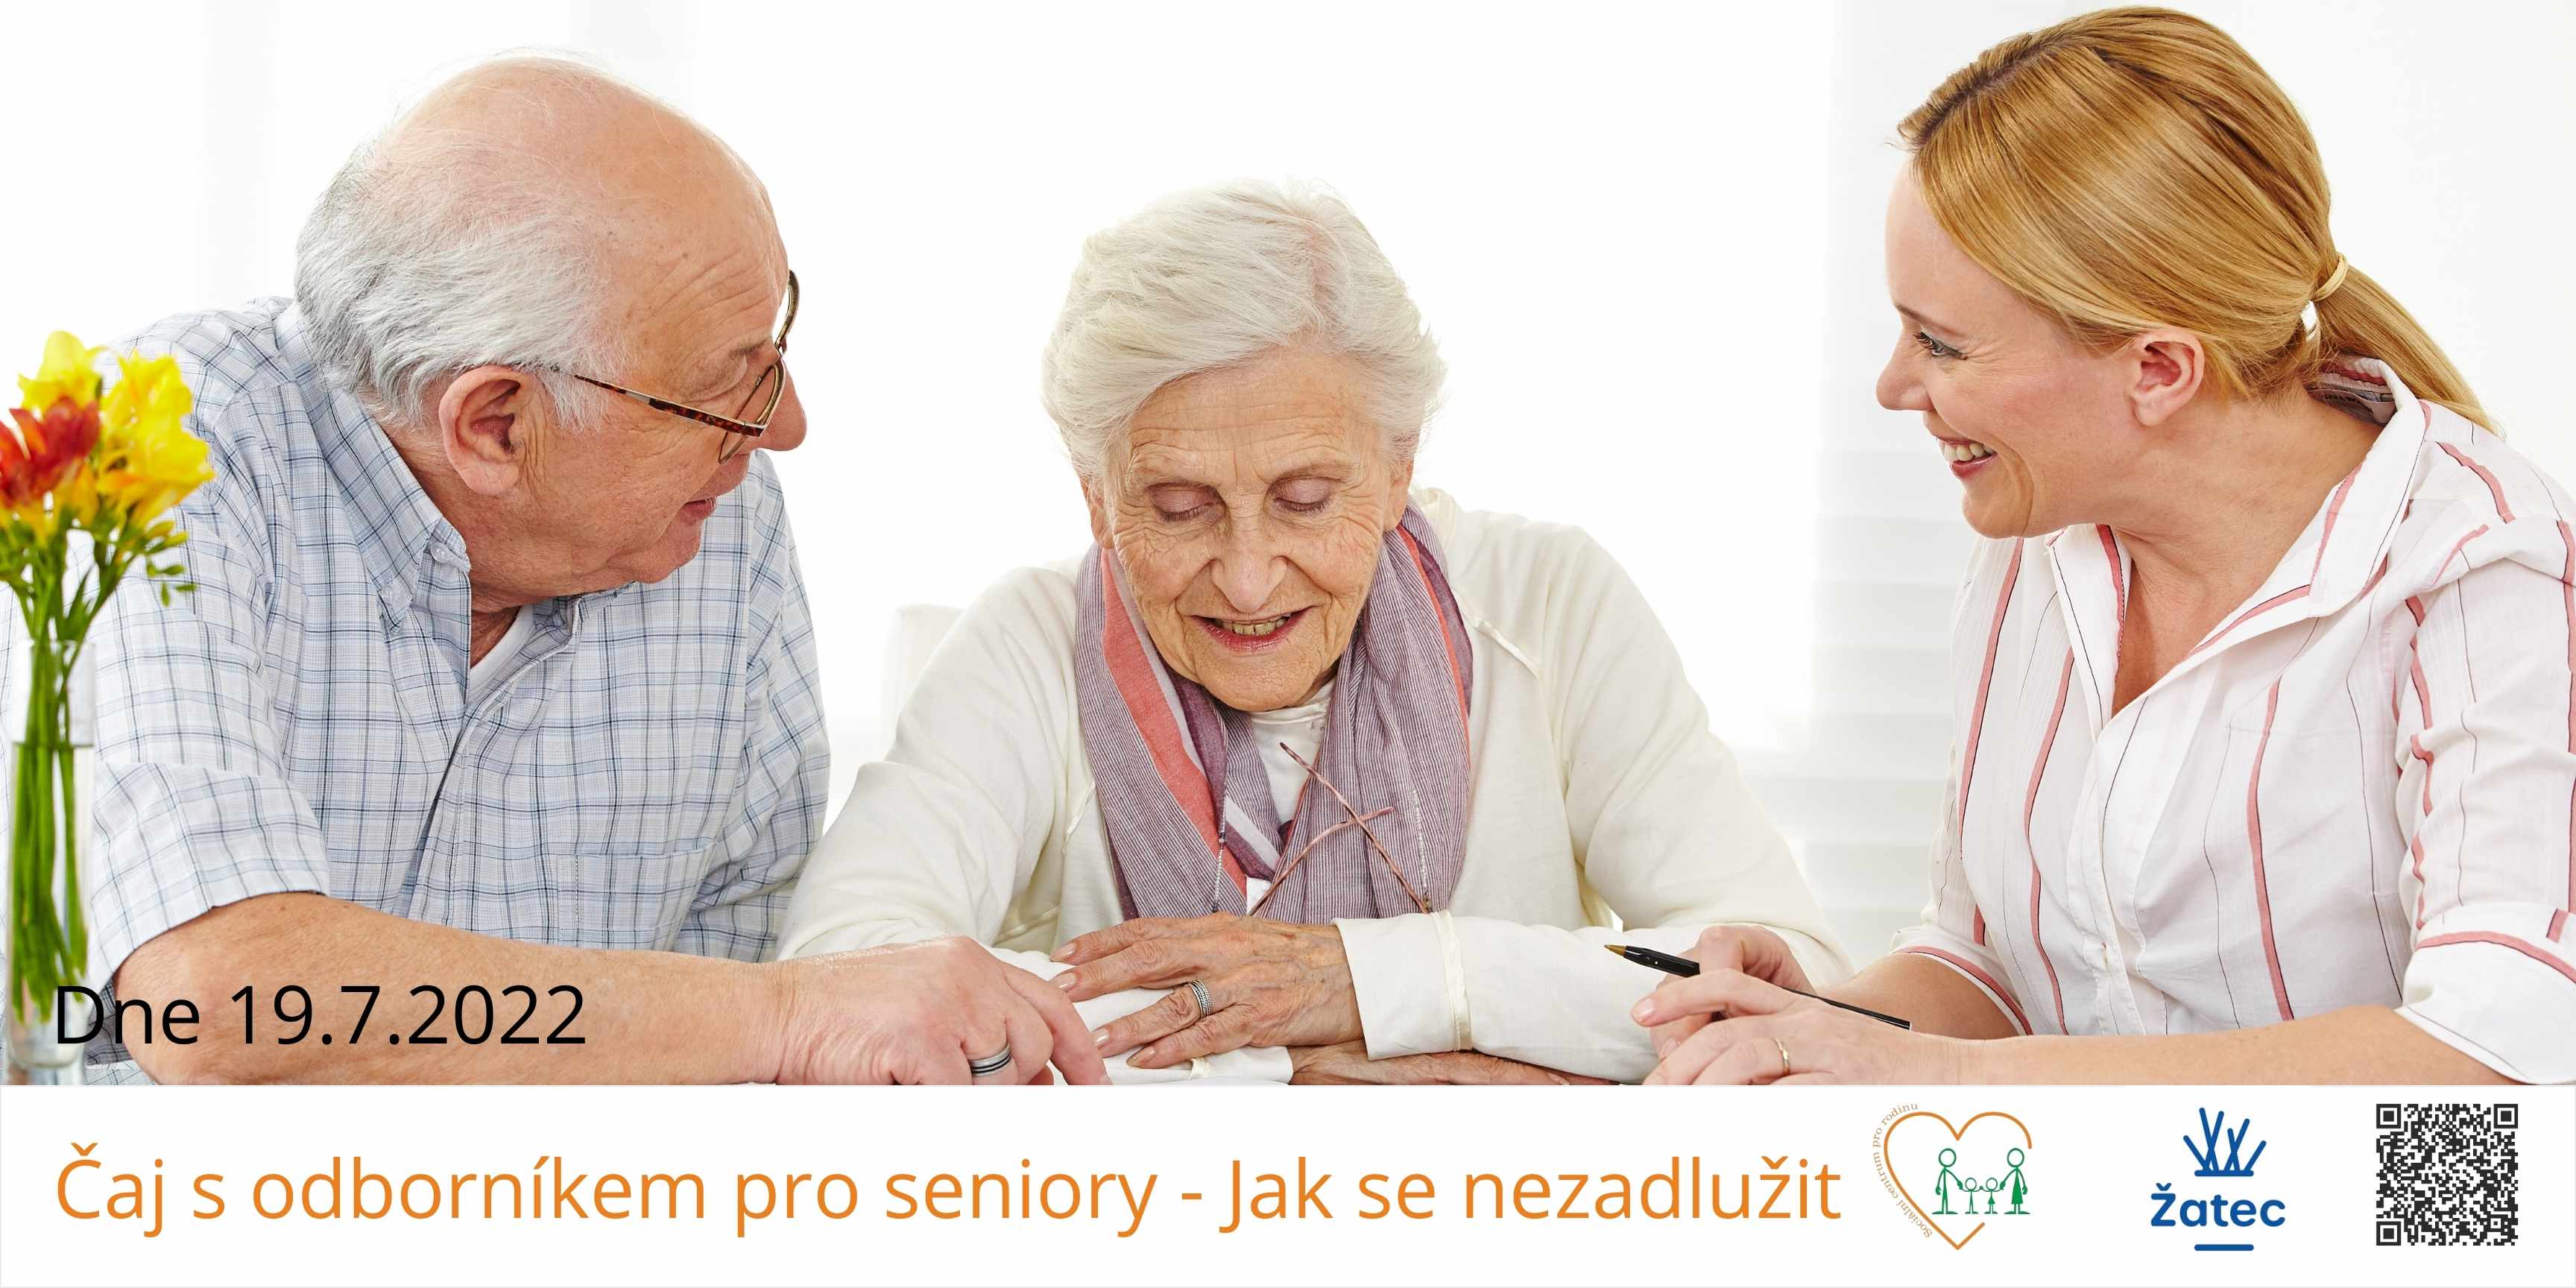 Program pro seniory a domovy důchodců